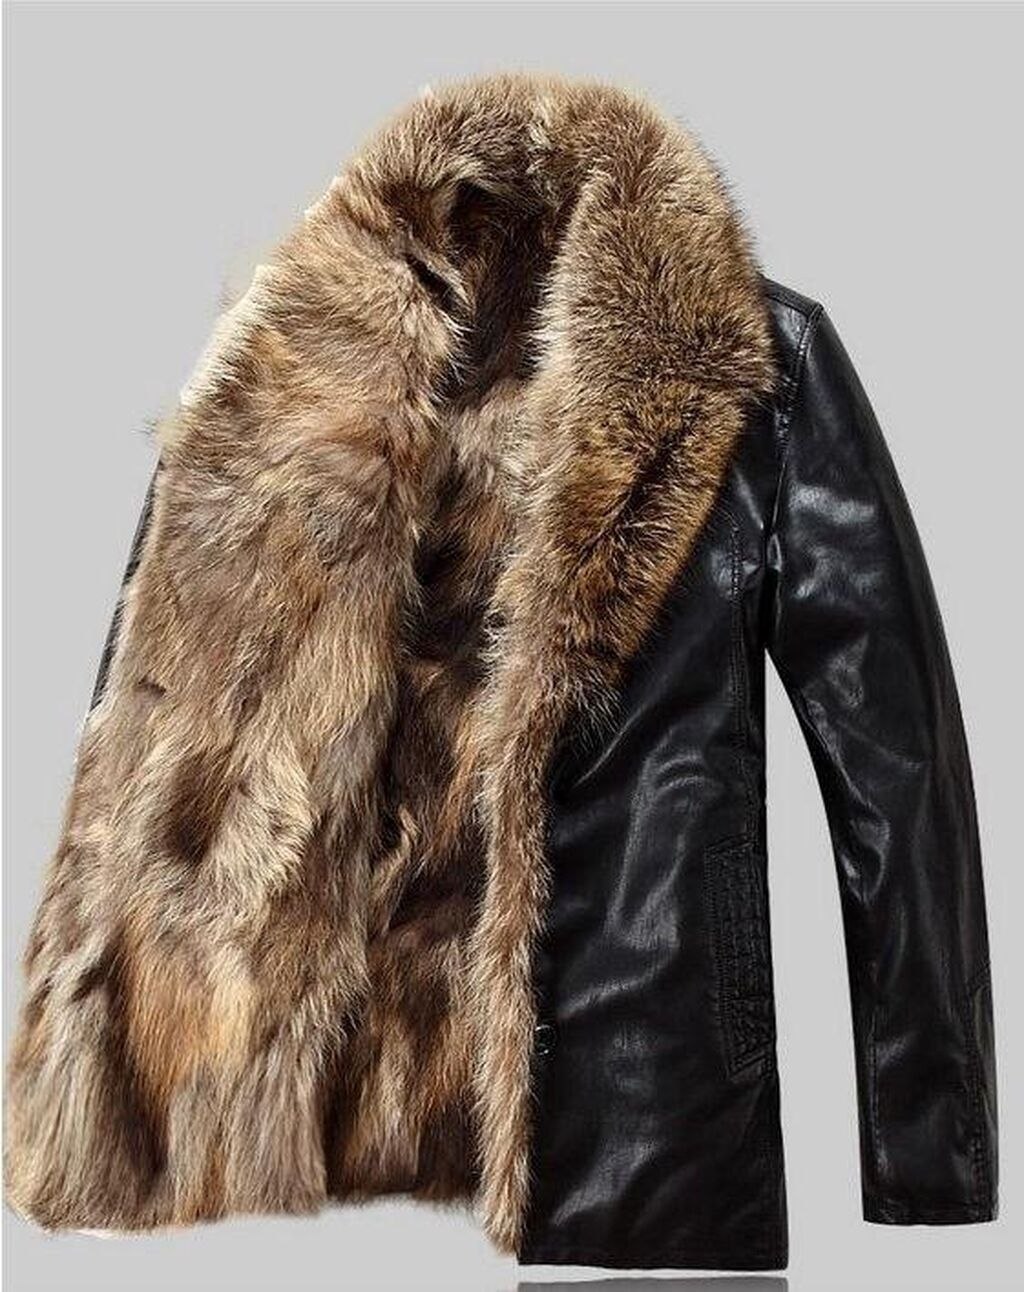 Куплю зимнюю меховую куртку. Куртка just Cavalli мужская зимняя мех волка. Куртка Херман кожаная с мехом волка. Куртка с мехом волка мужская. Кожаная куртка с волчьим мехом мужская.